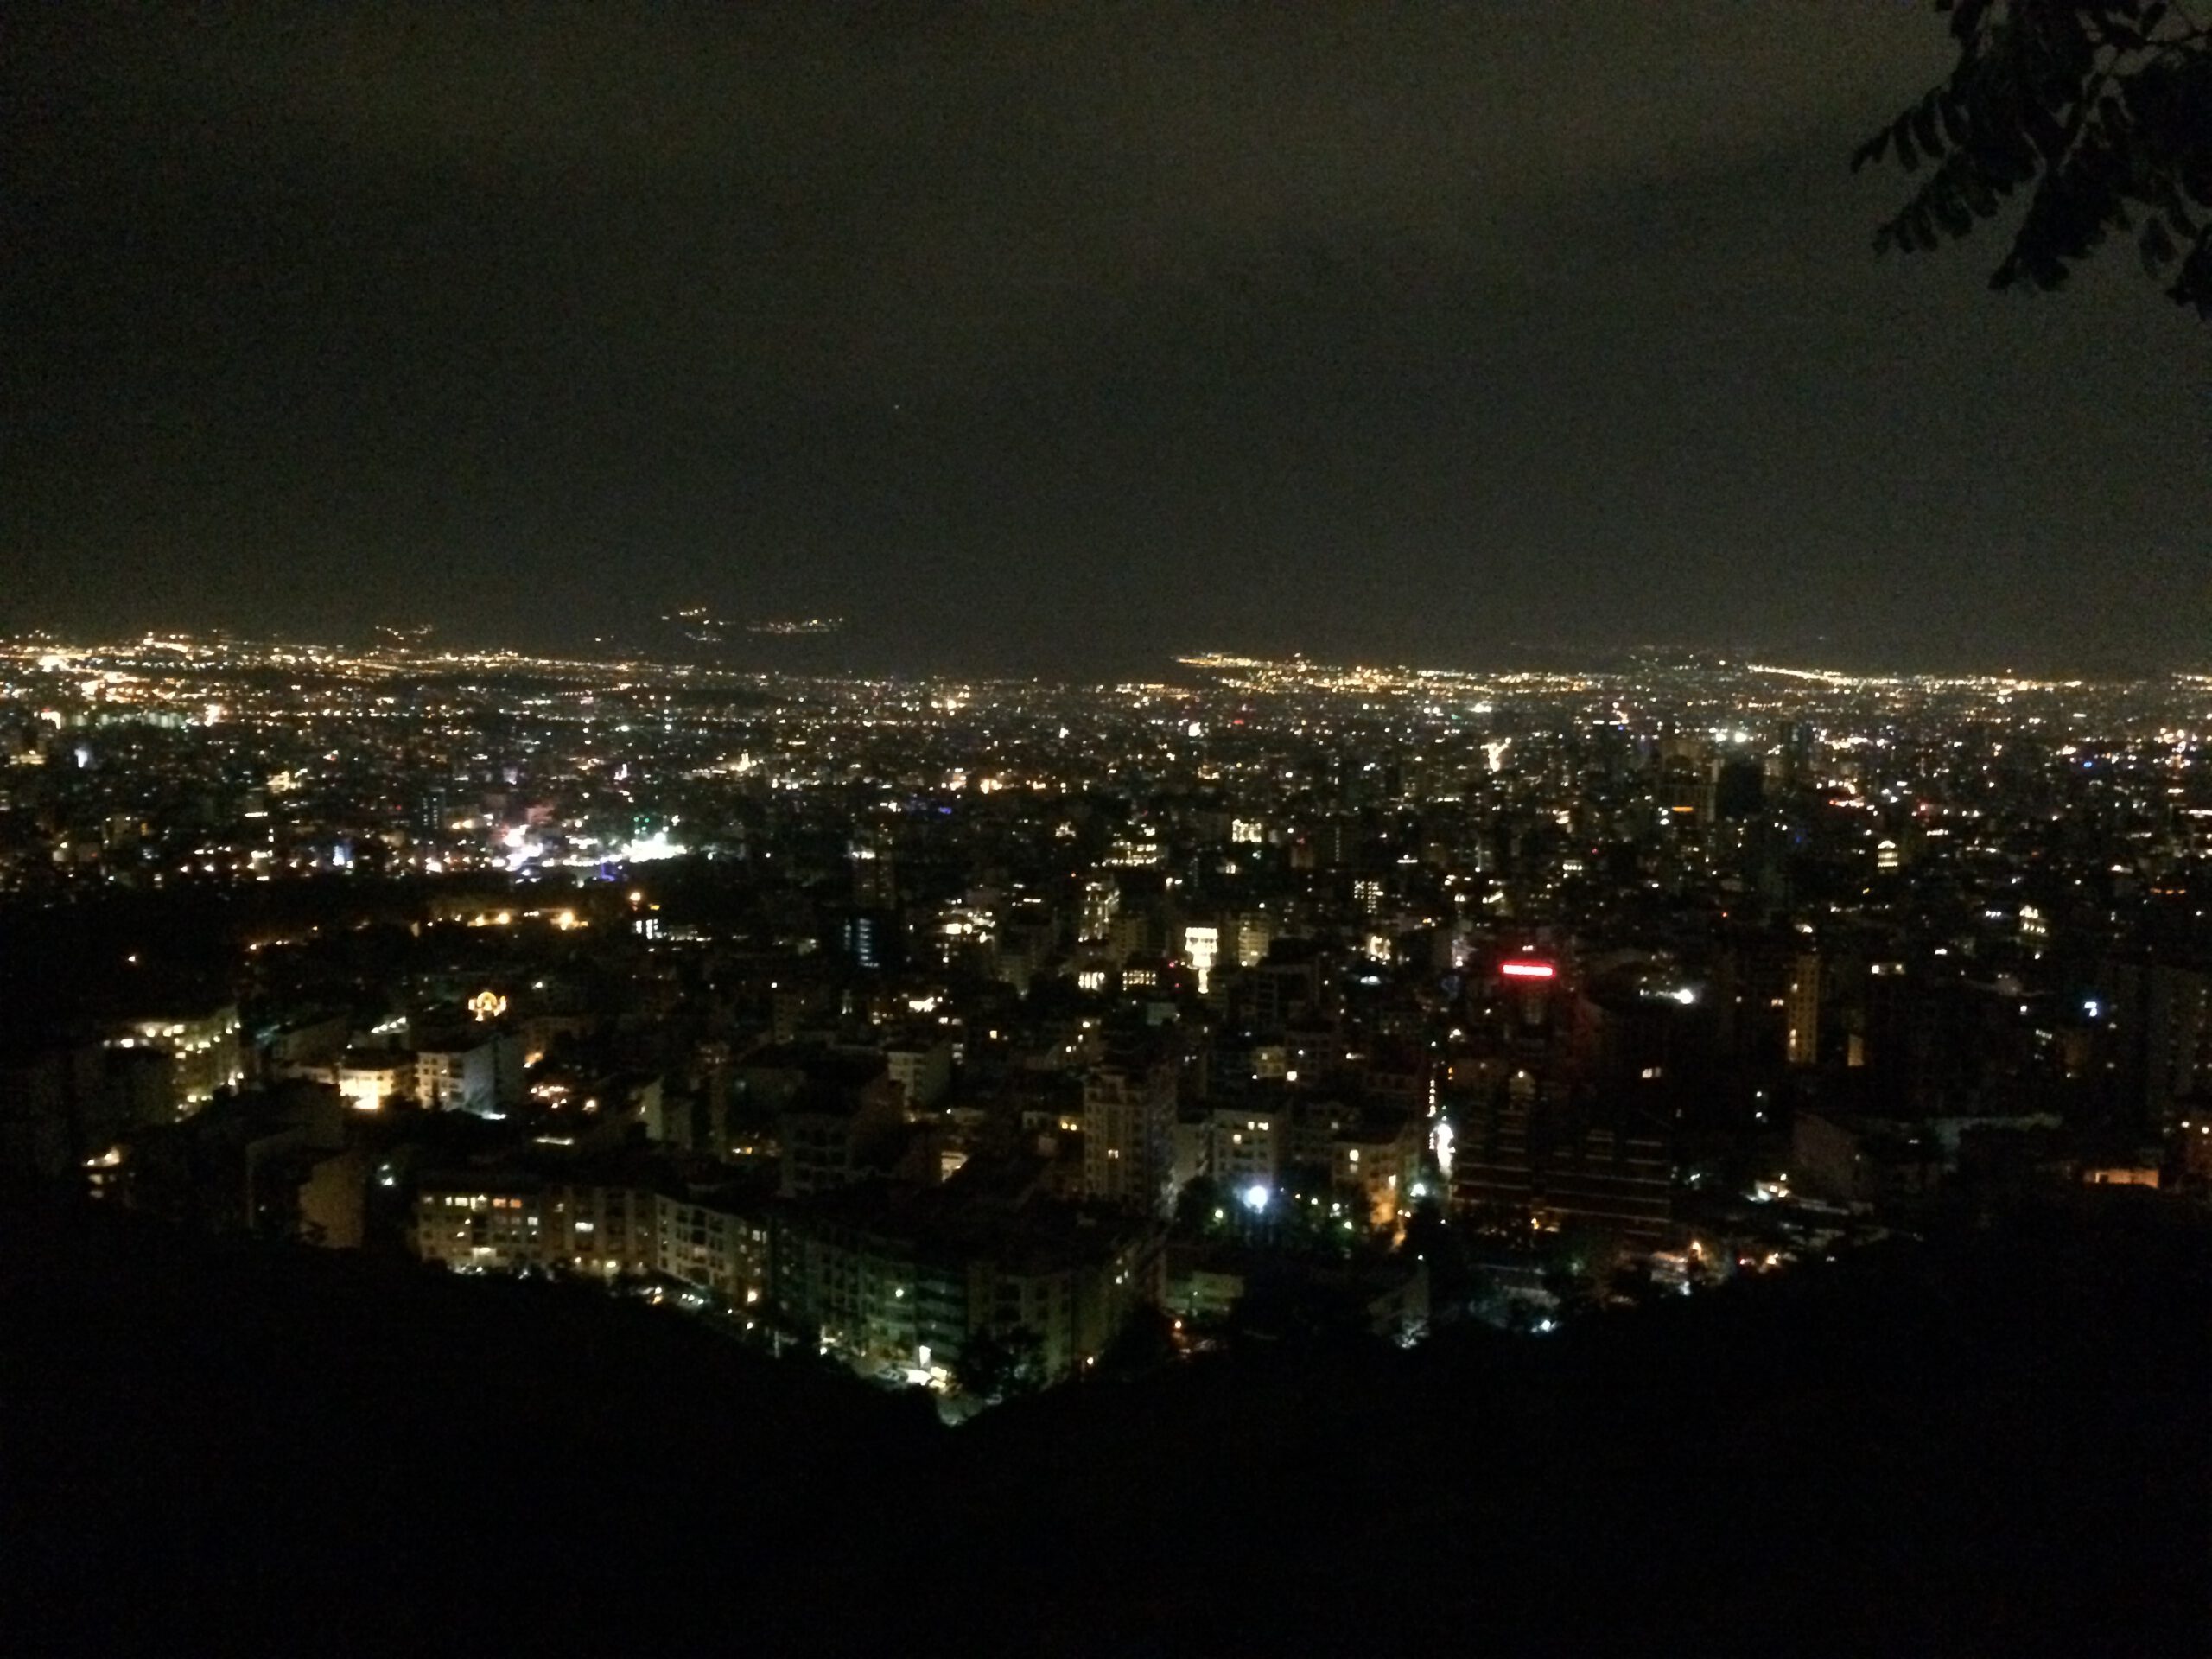 De wereldstad Teheran ligt in een vallei tussen de Totsjalbergen in. Dit is het nachtelijk uitzicht vanaf Bam-e Tehran in Noord-Teheran.